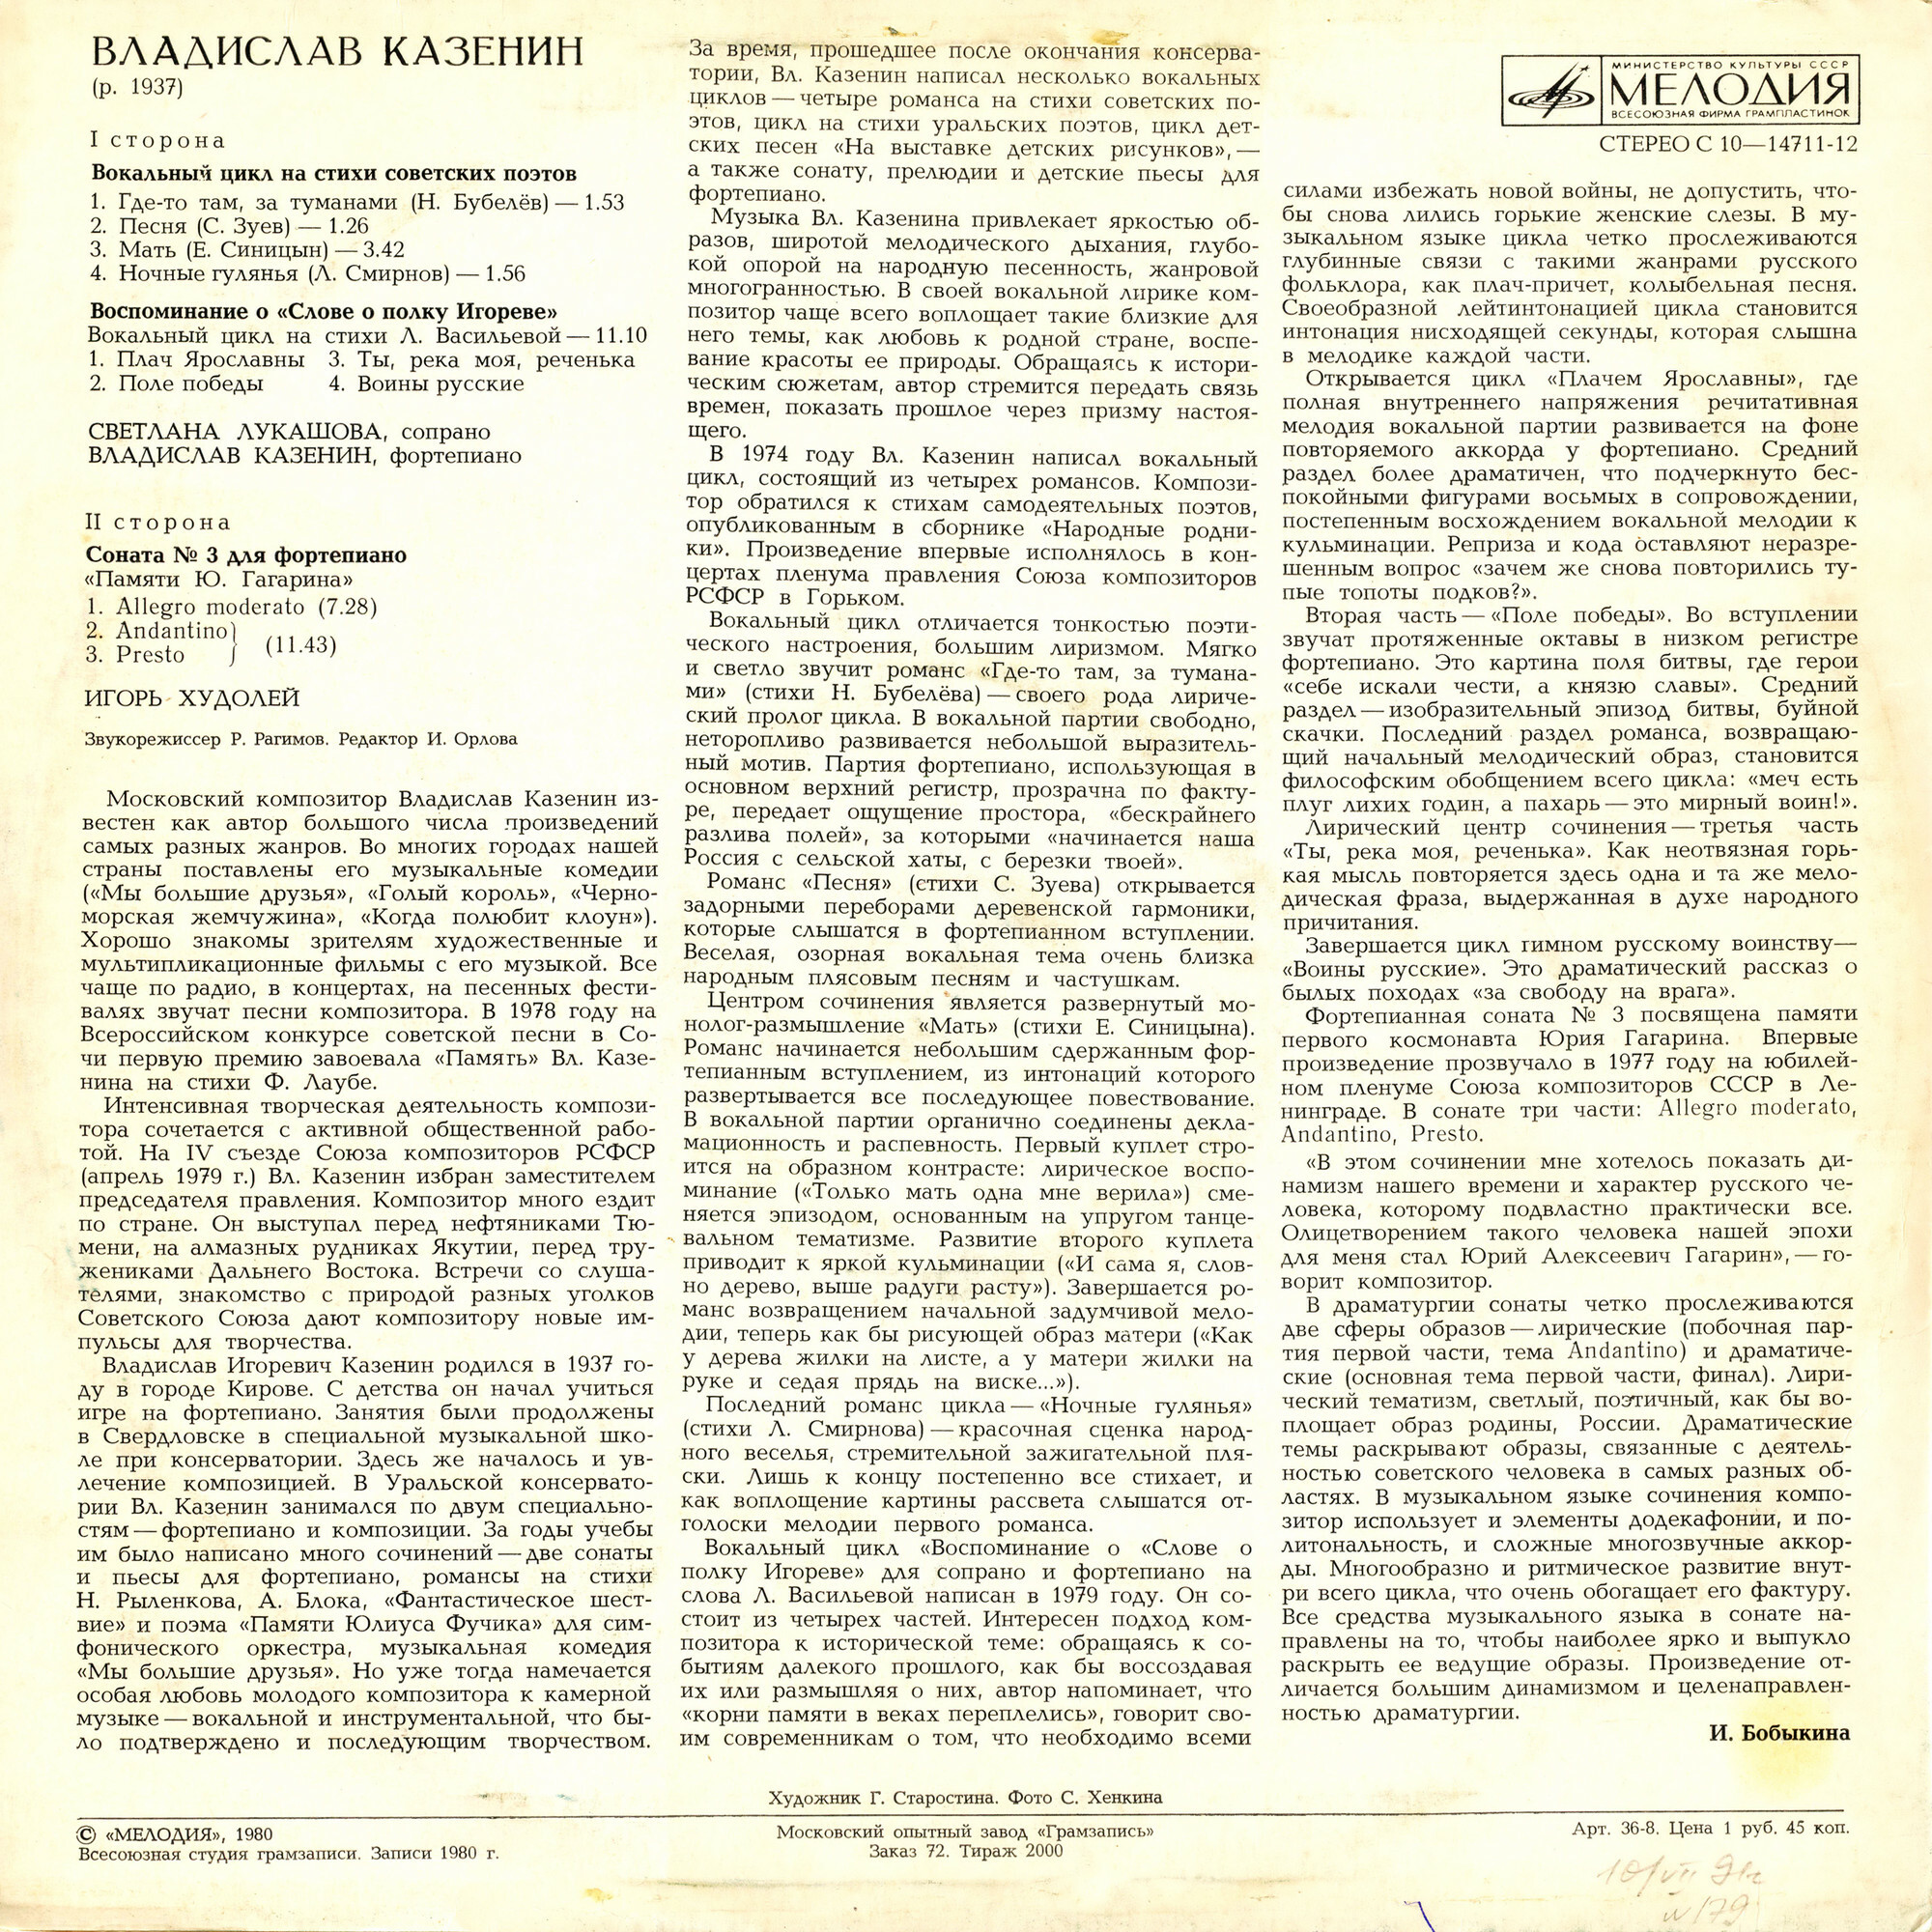 B. КАЗЕНИН (р. 1937): Романсы / Соната N 3 для фортепиано